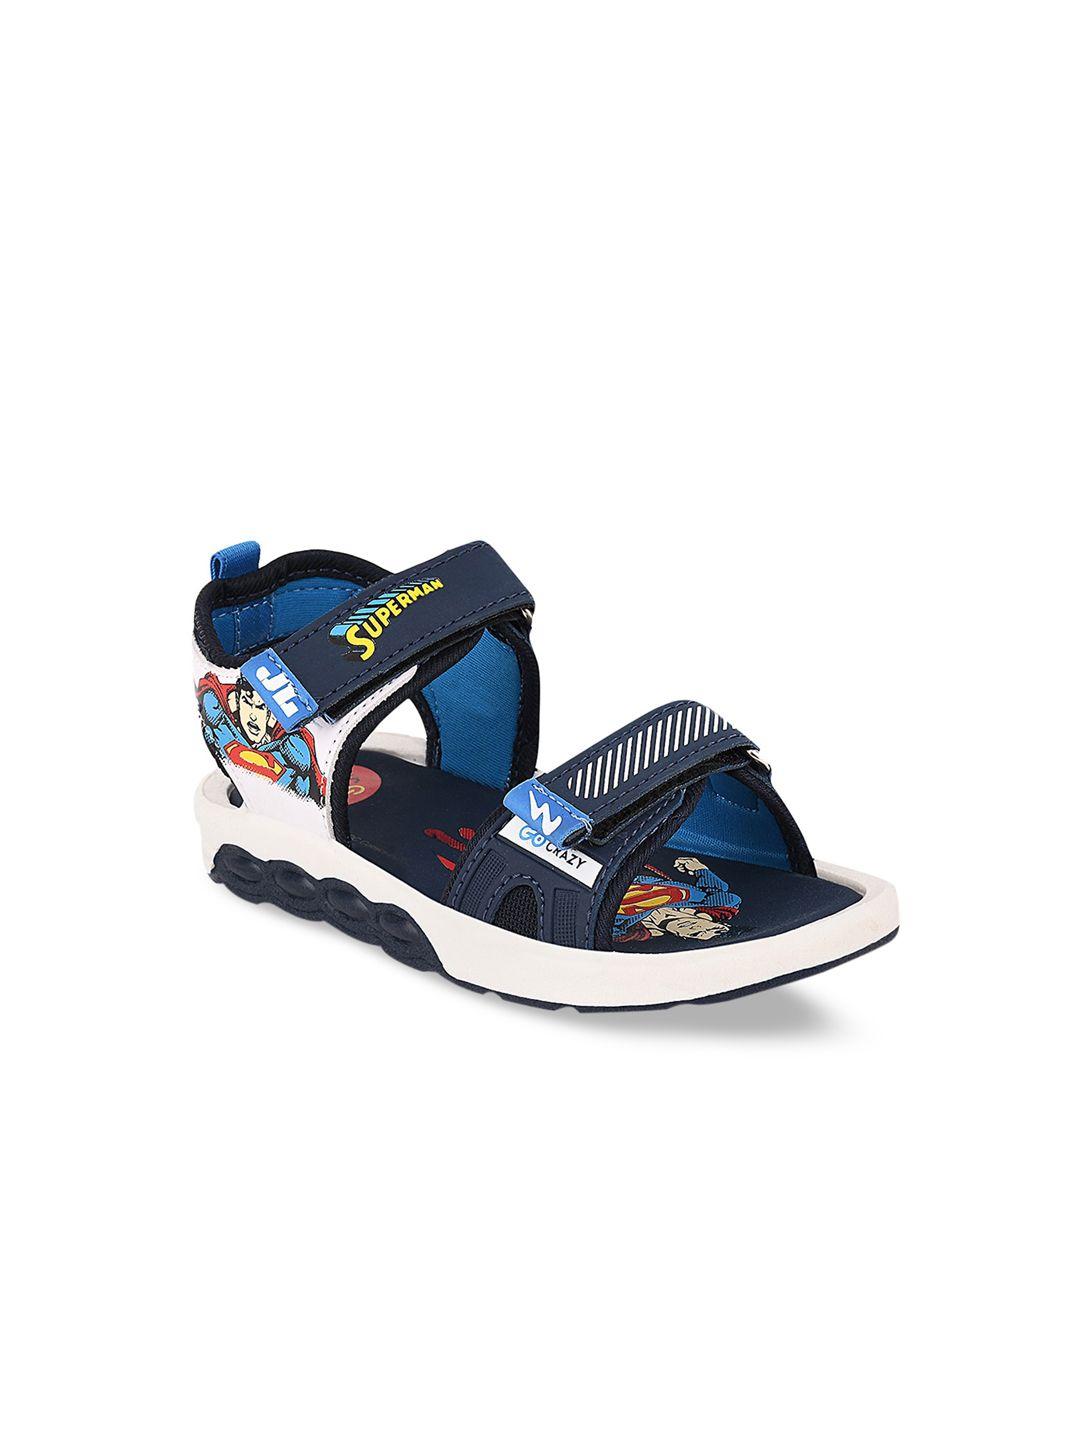 campus-kids-navy-blue-sports-sandals